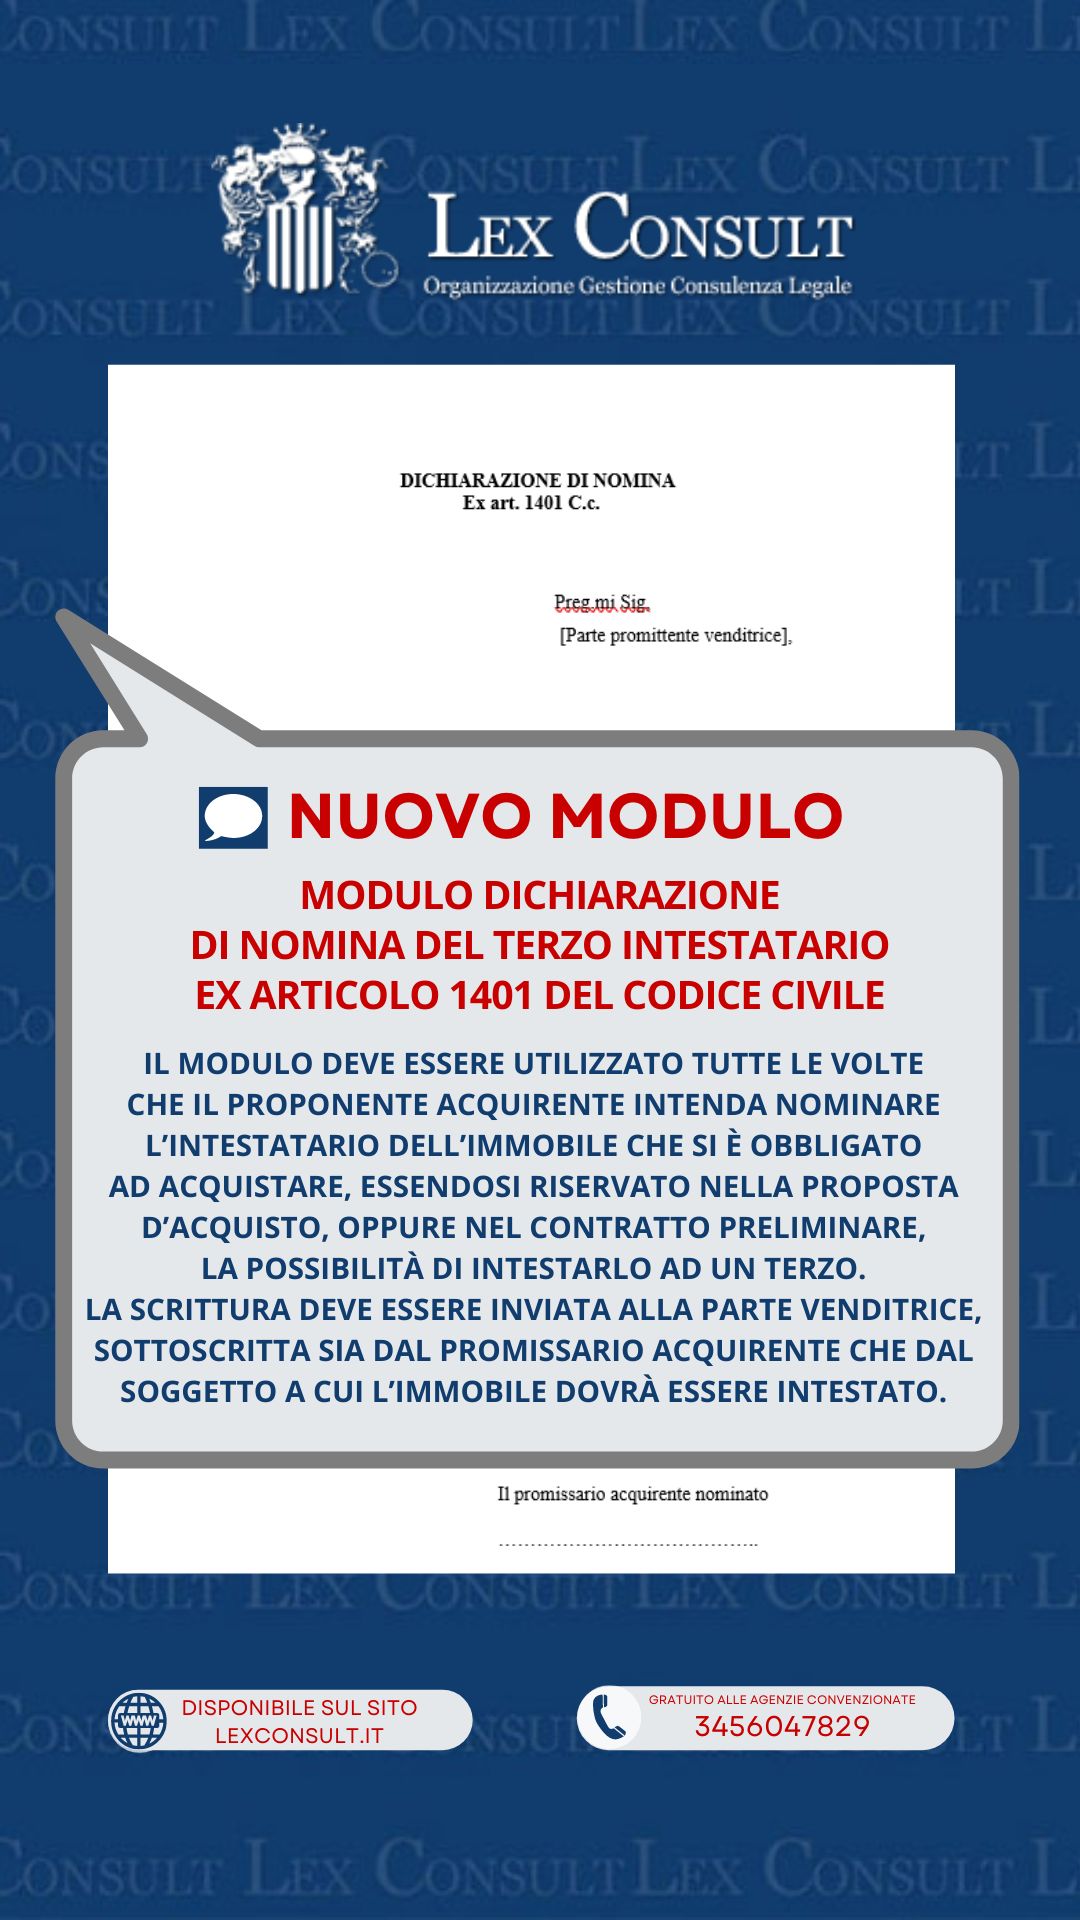 MODULO DICHIARAZIONE DI NOMINA DEL TERZO INTESTATARIO EX ARTICOLO 1401 DEL CODICE CIVILE